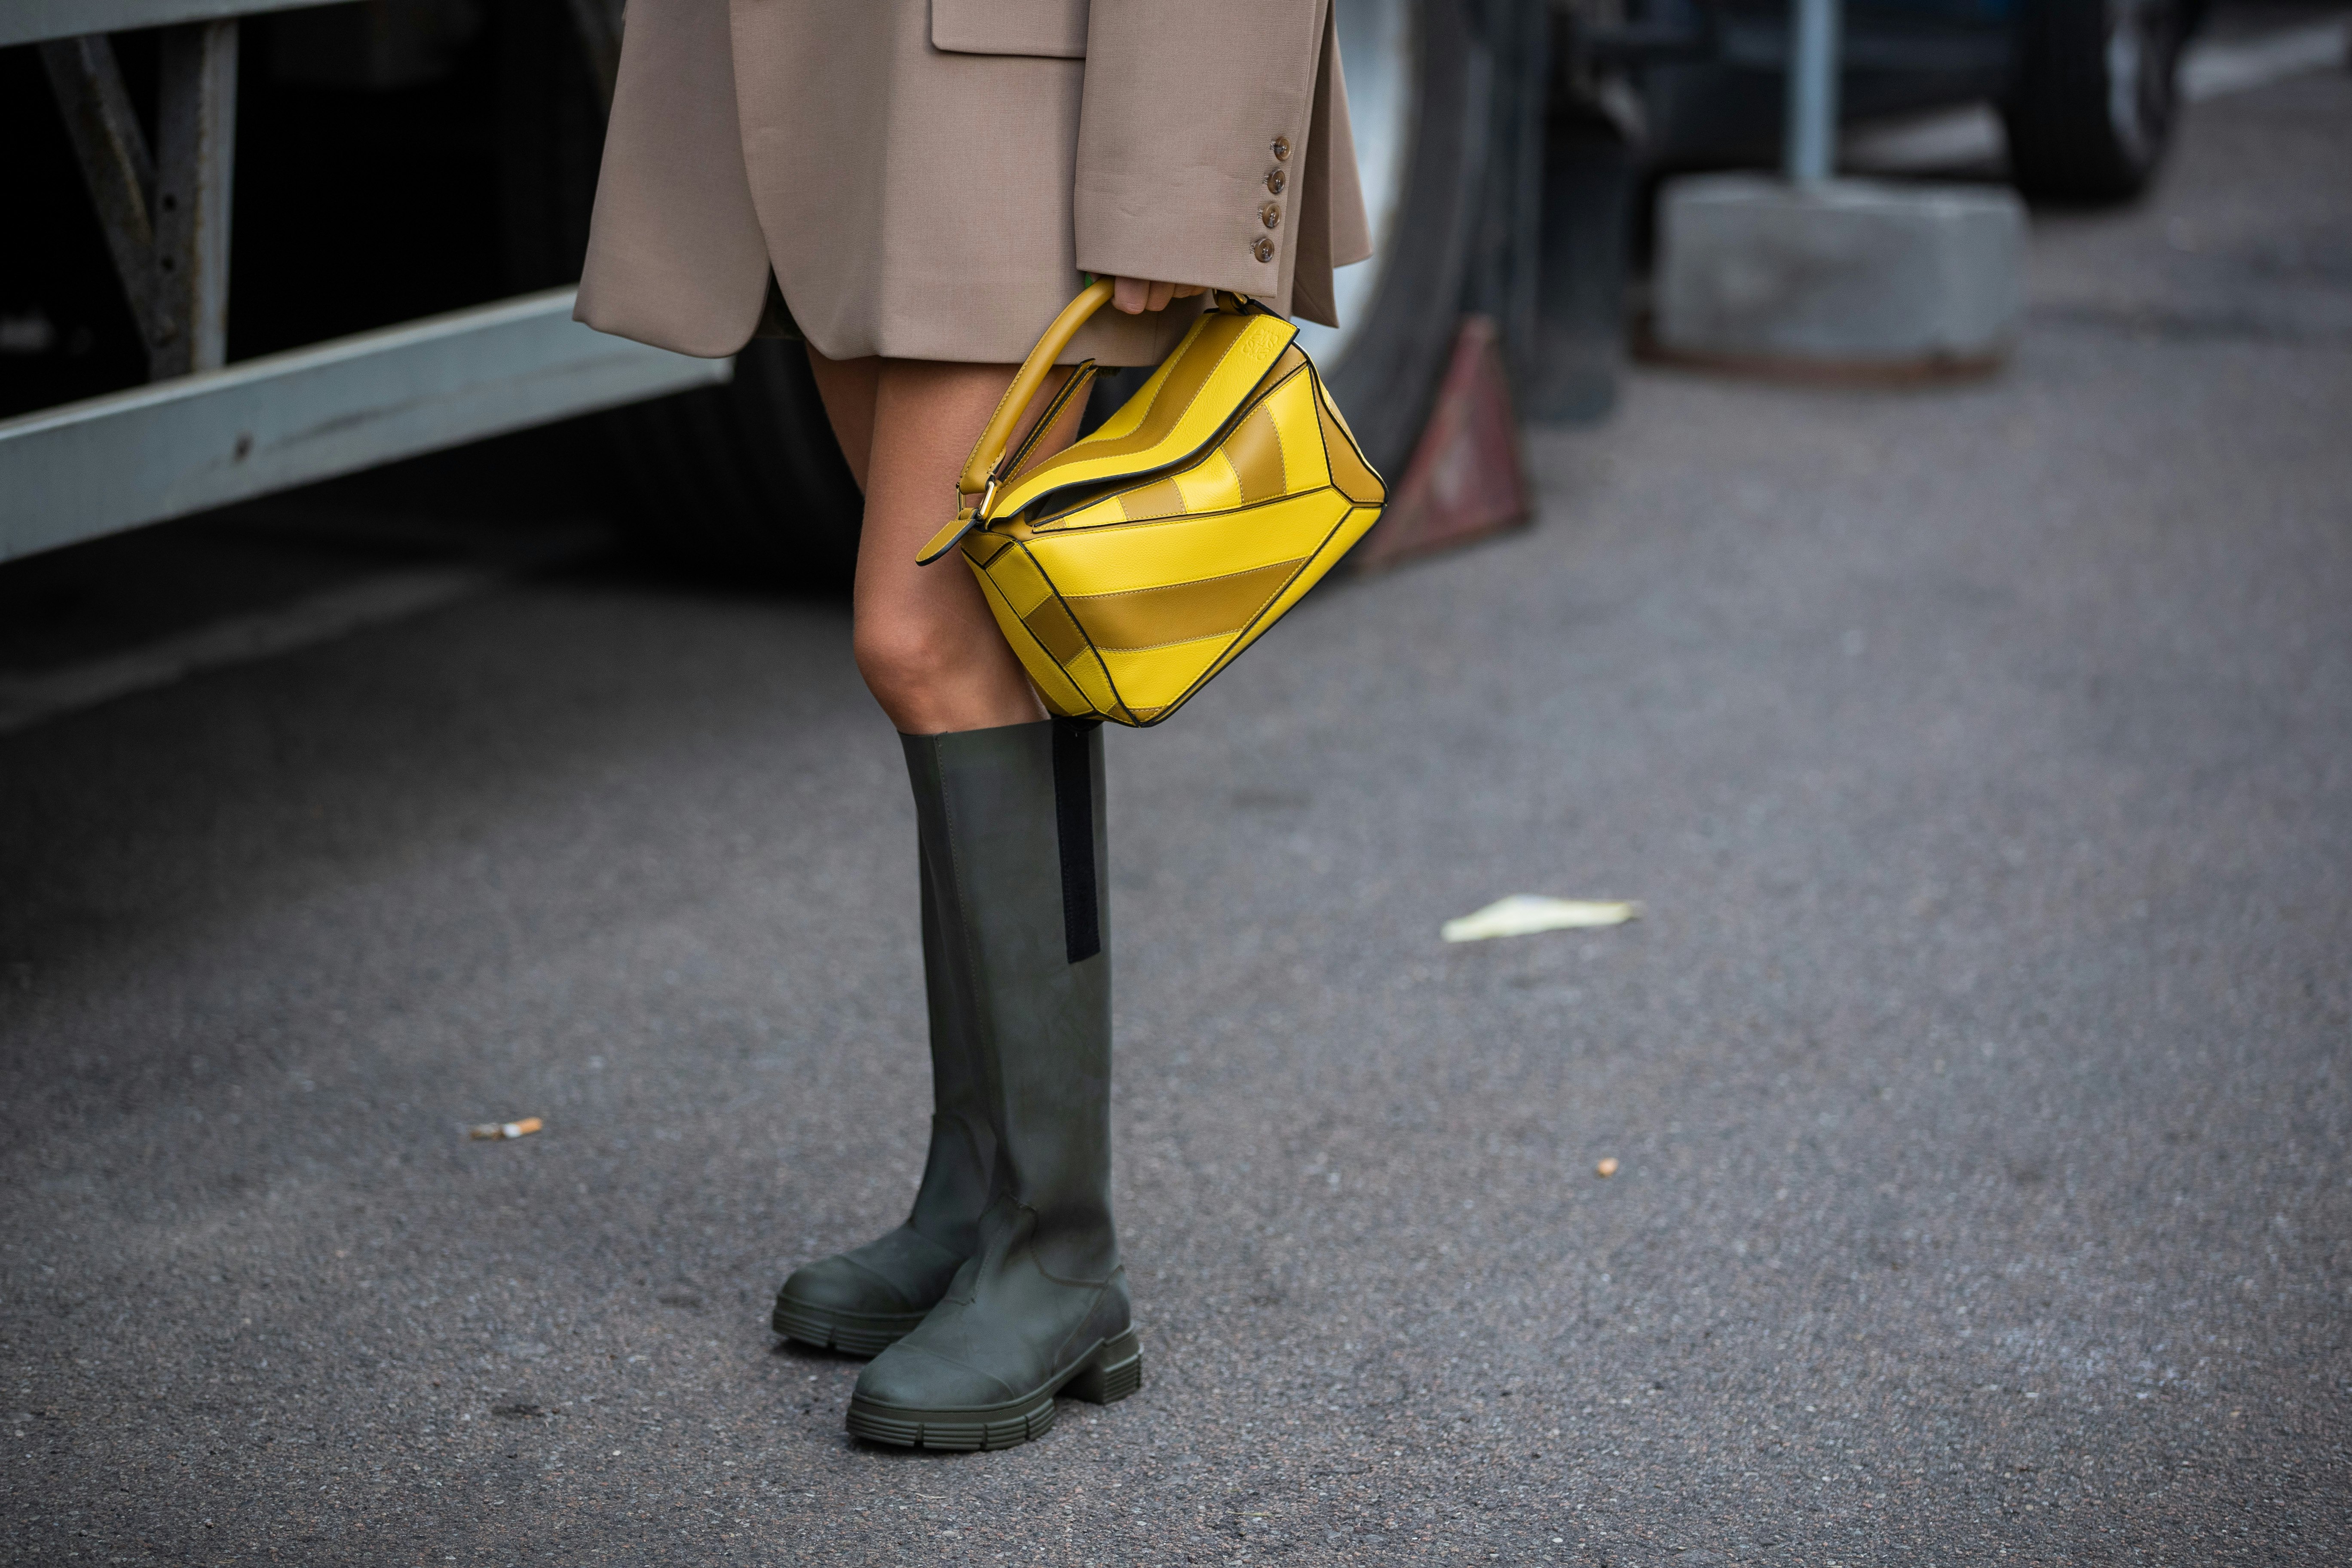 fashion rain boot